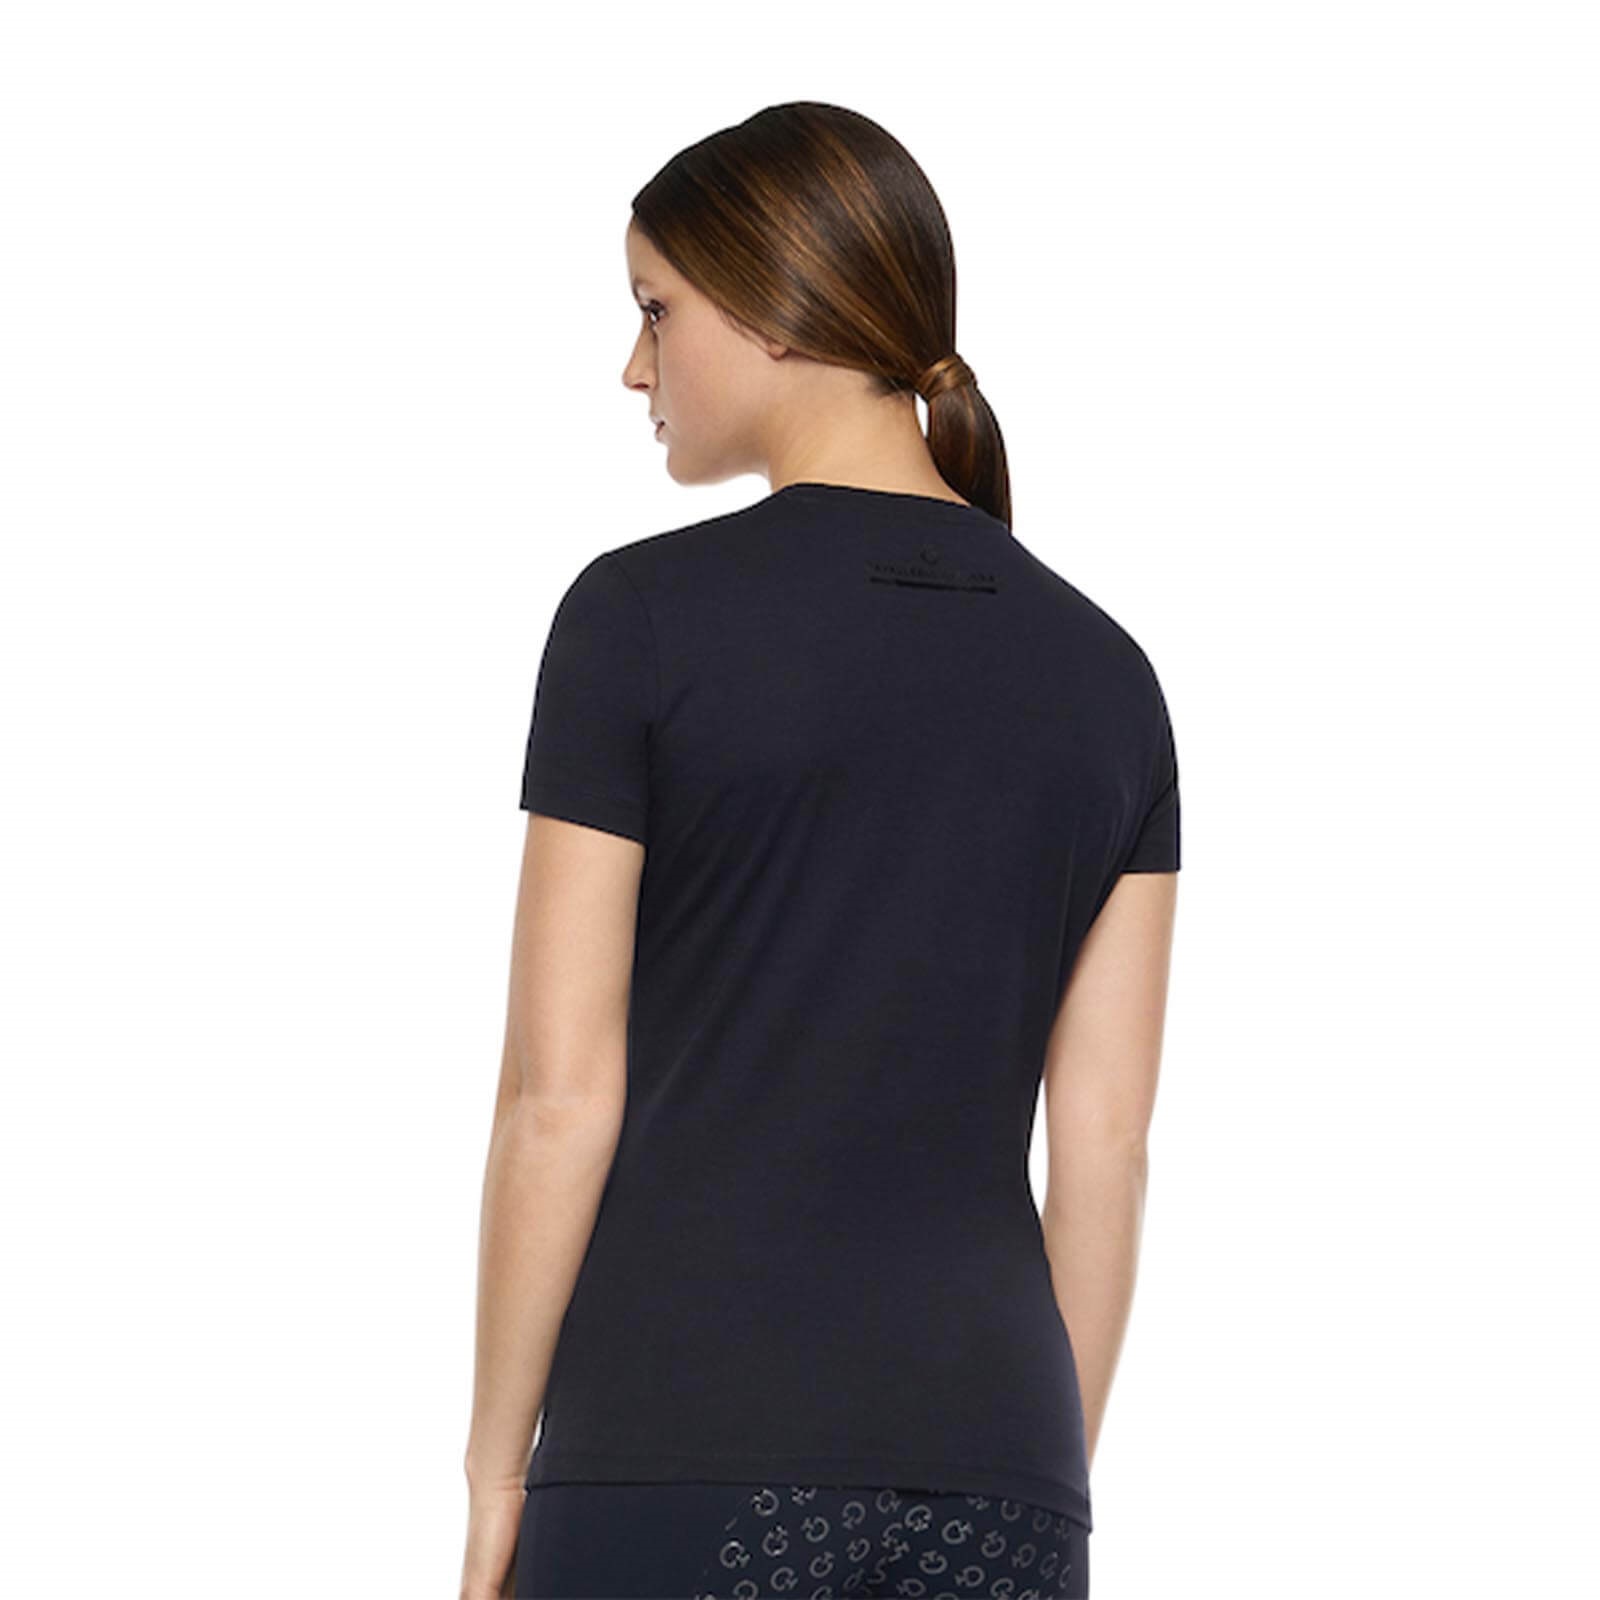 CAVALLERIA TOSCANA bequemes Damen T-Shirt mit Mini CT Flock - navy - XL - 2